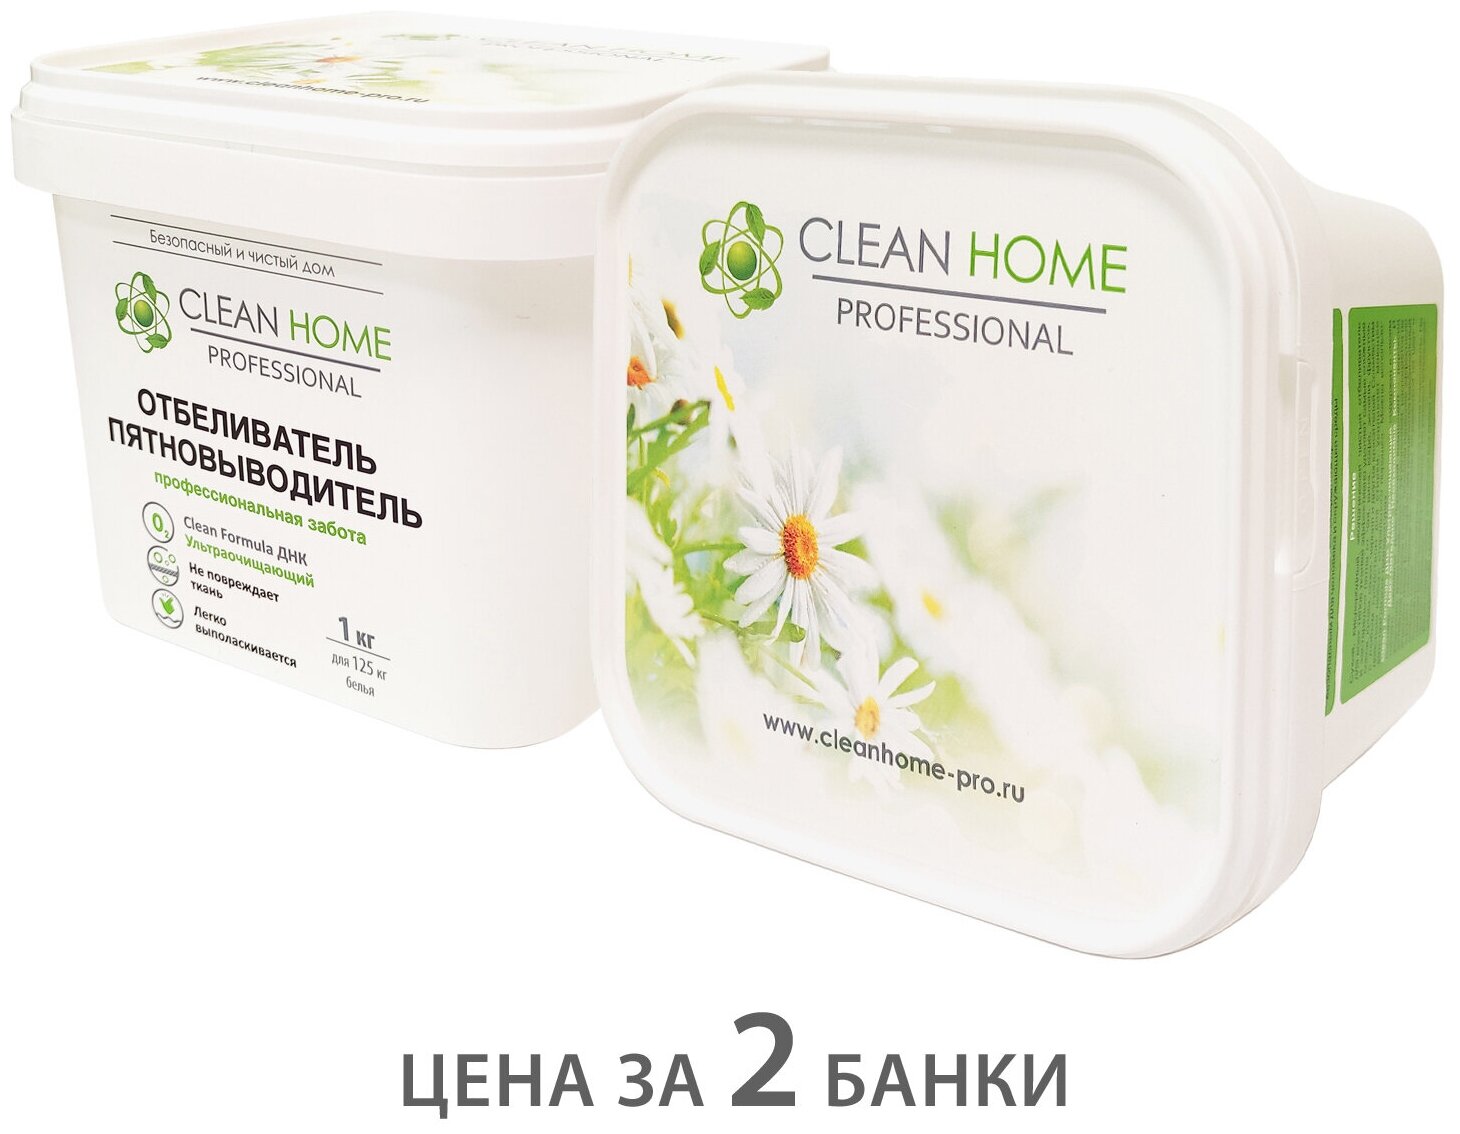 CLEAN HOME отбеливатель-пятновыводитель экспресс-эффект. порошок 1 кг х 2штуки